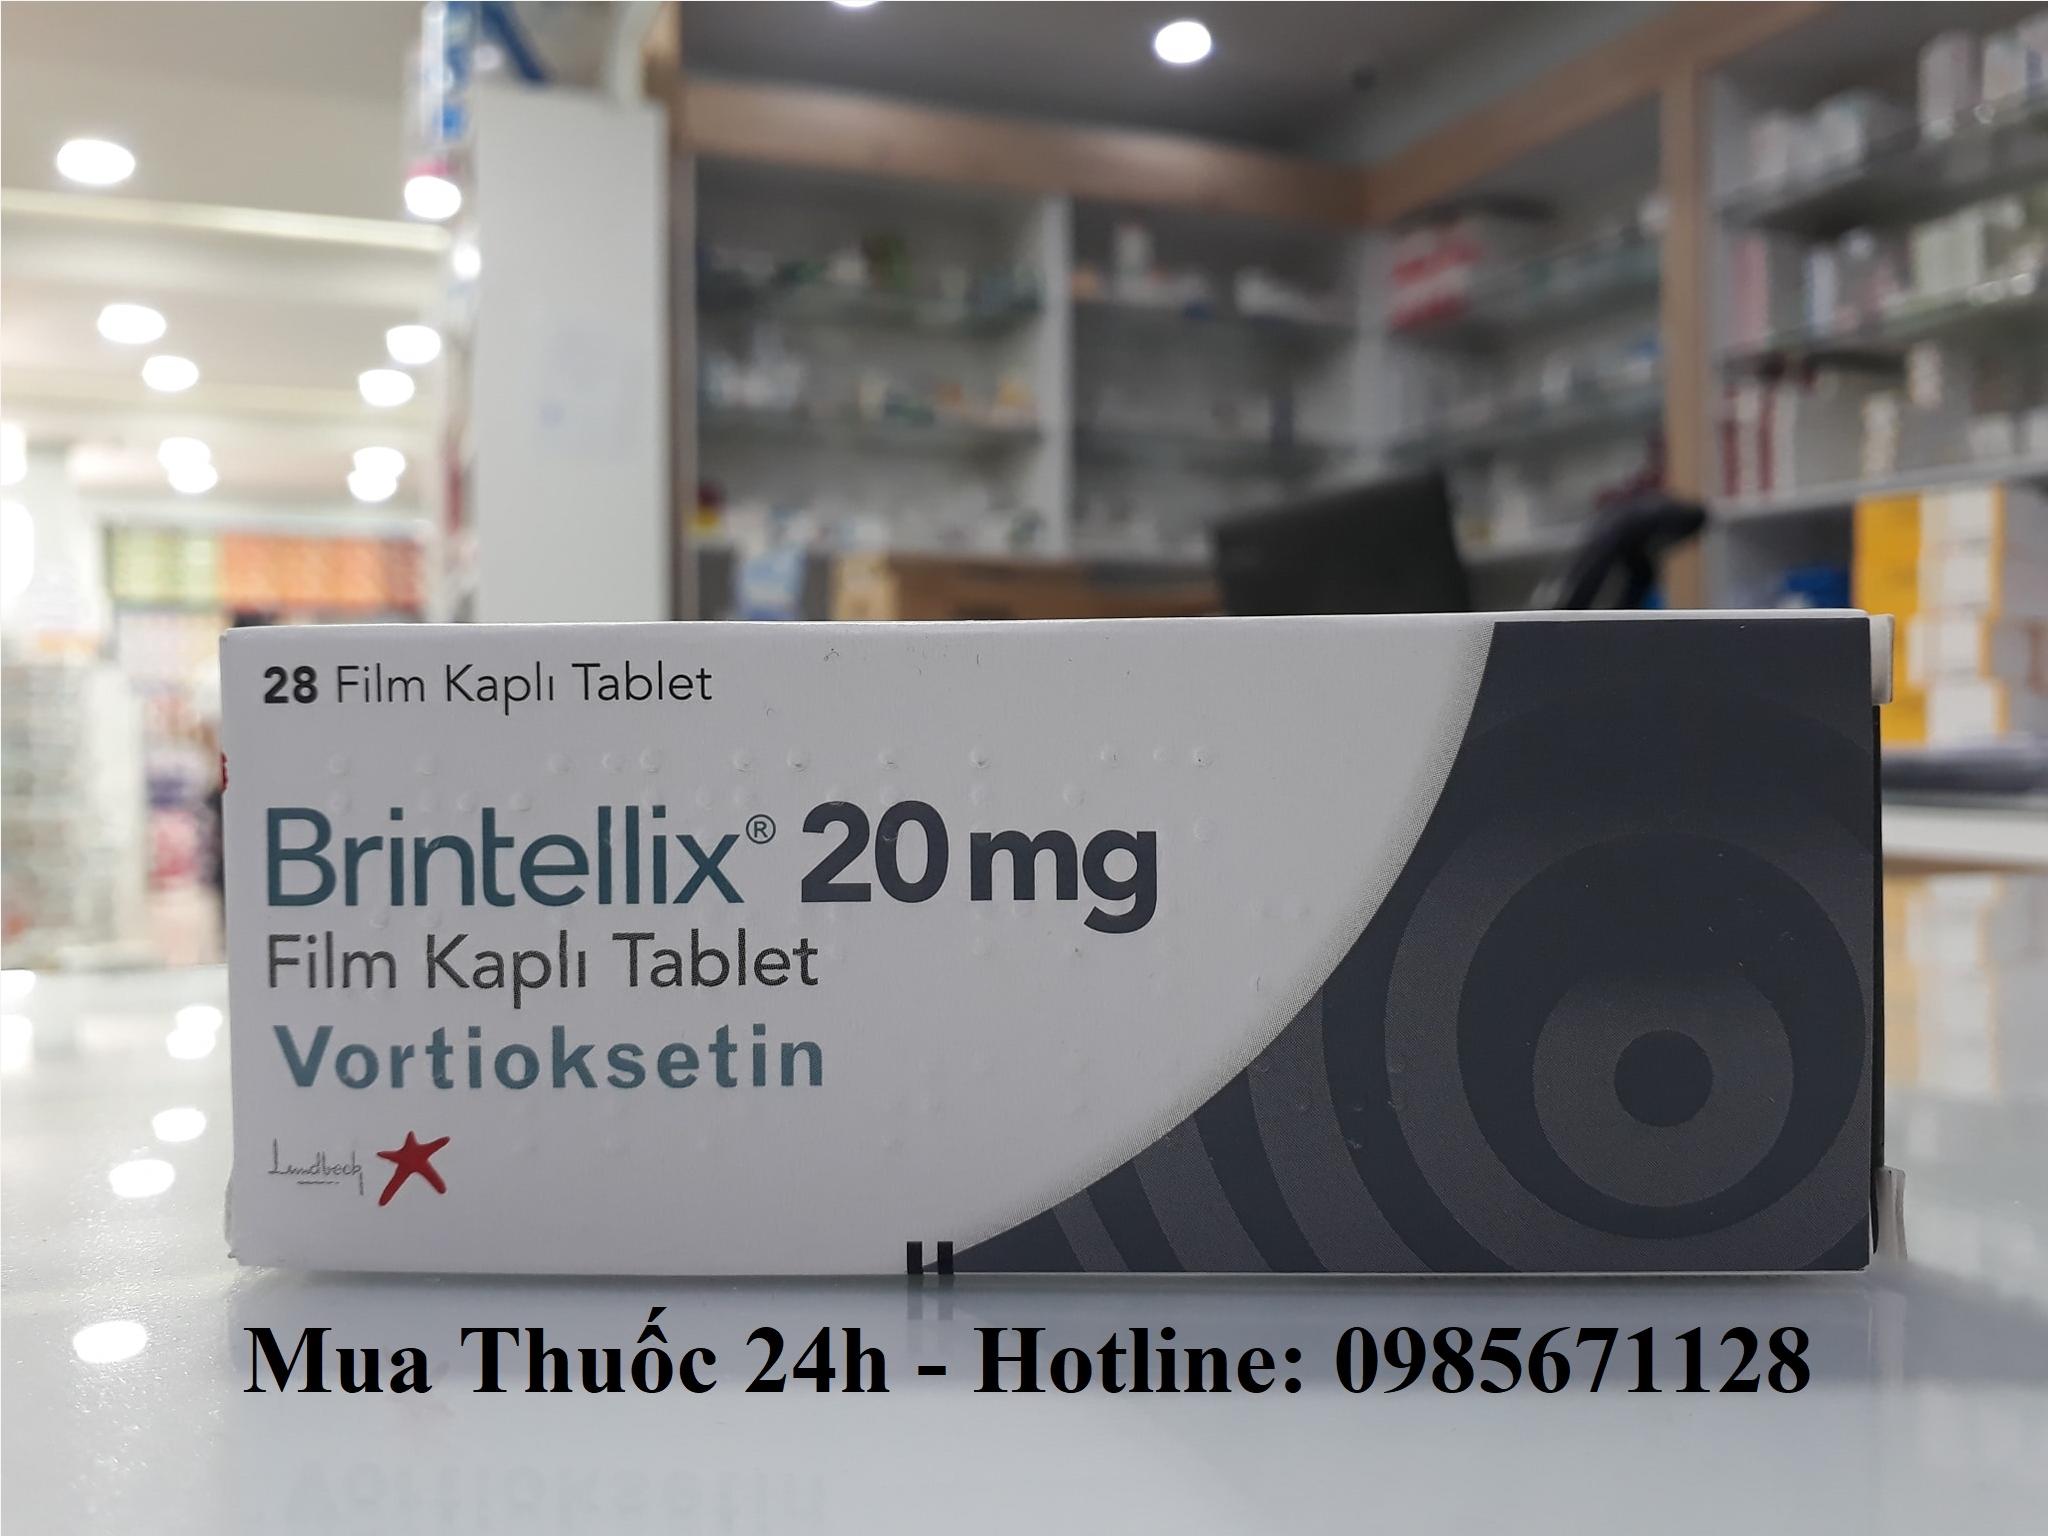 Thuốc Brintellix 20mg Vortioxetine giá bao nhiêu, mua ở đâu